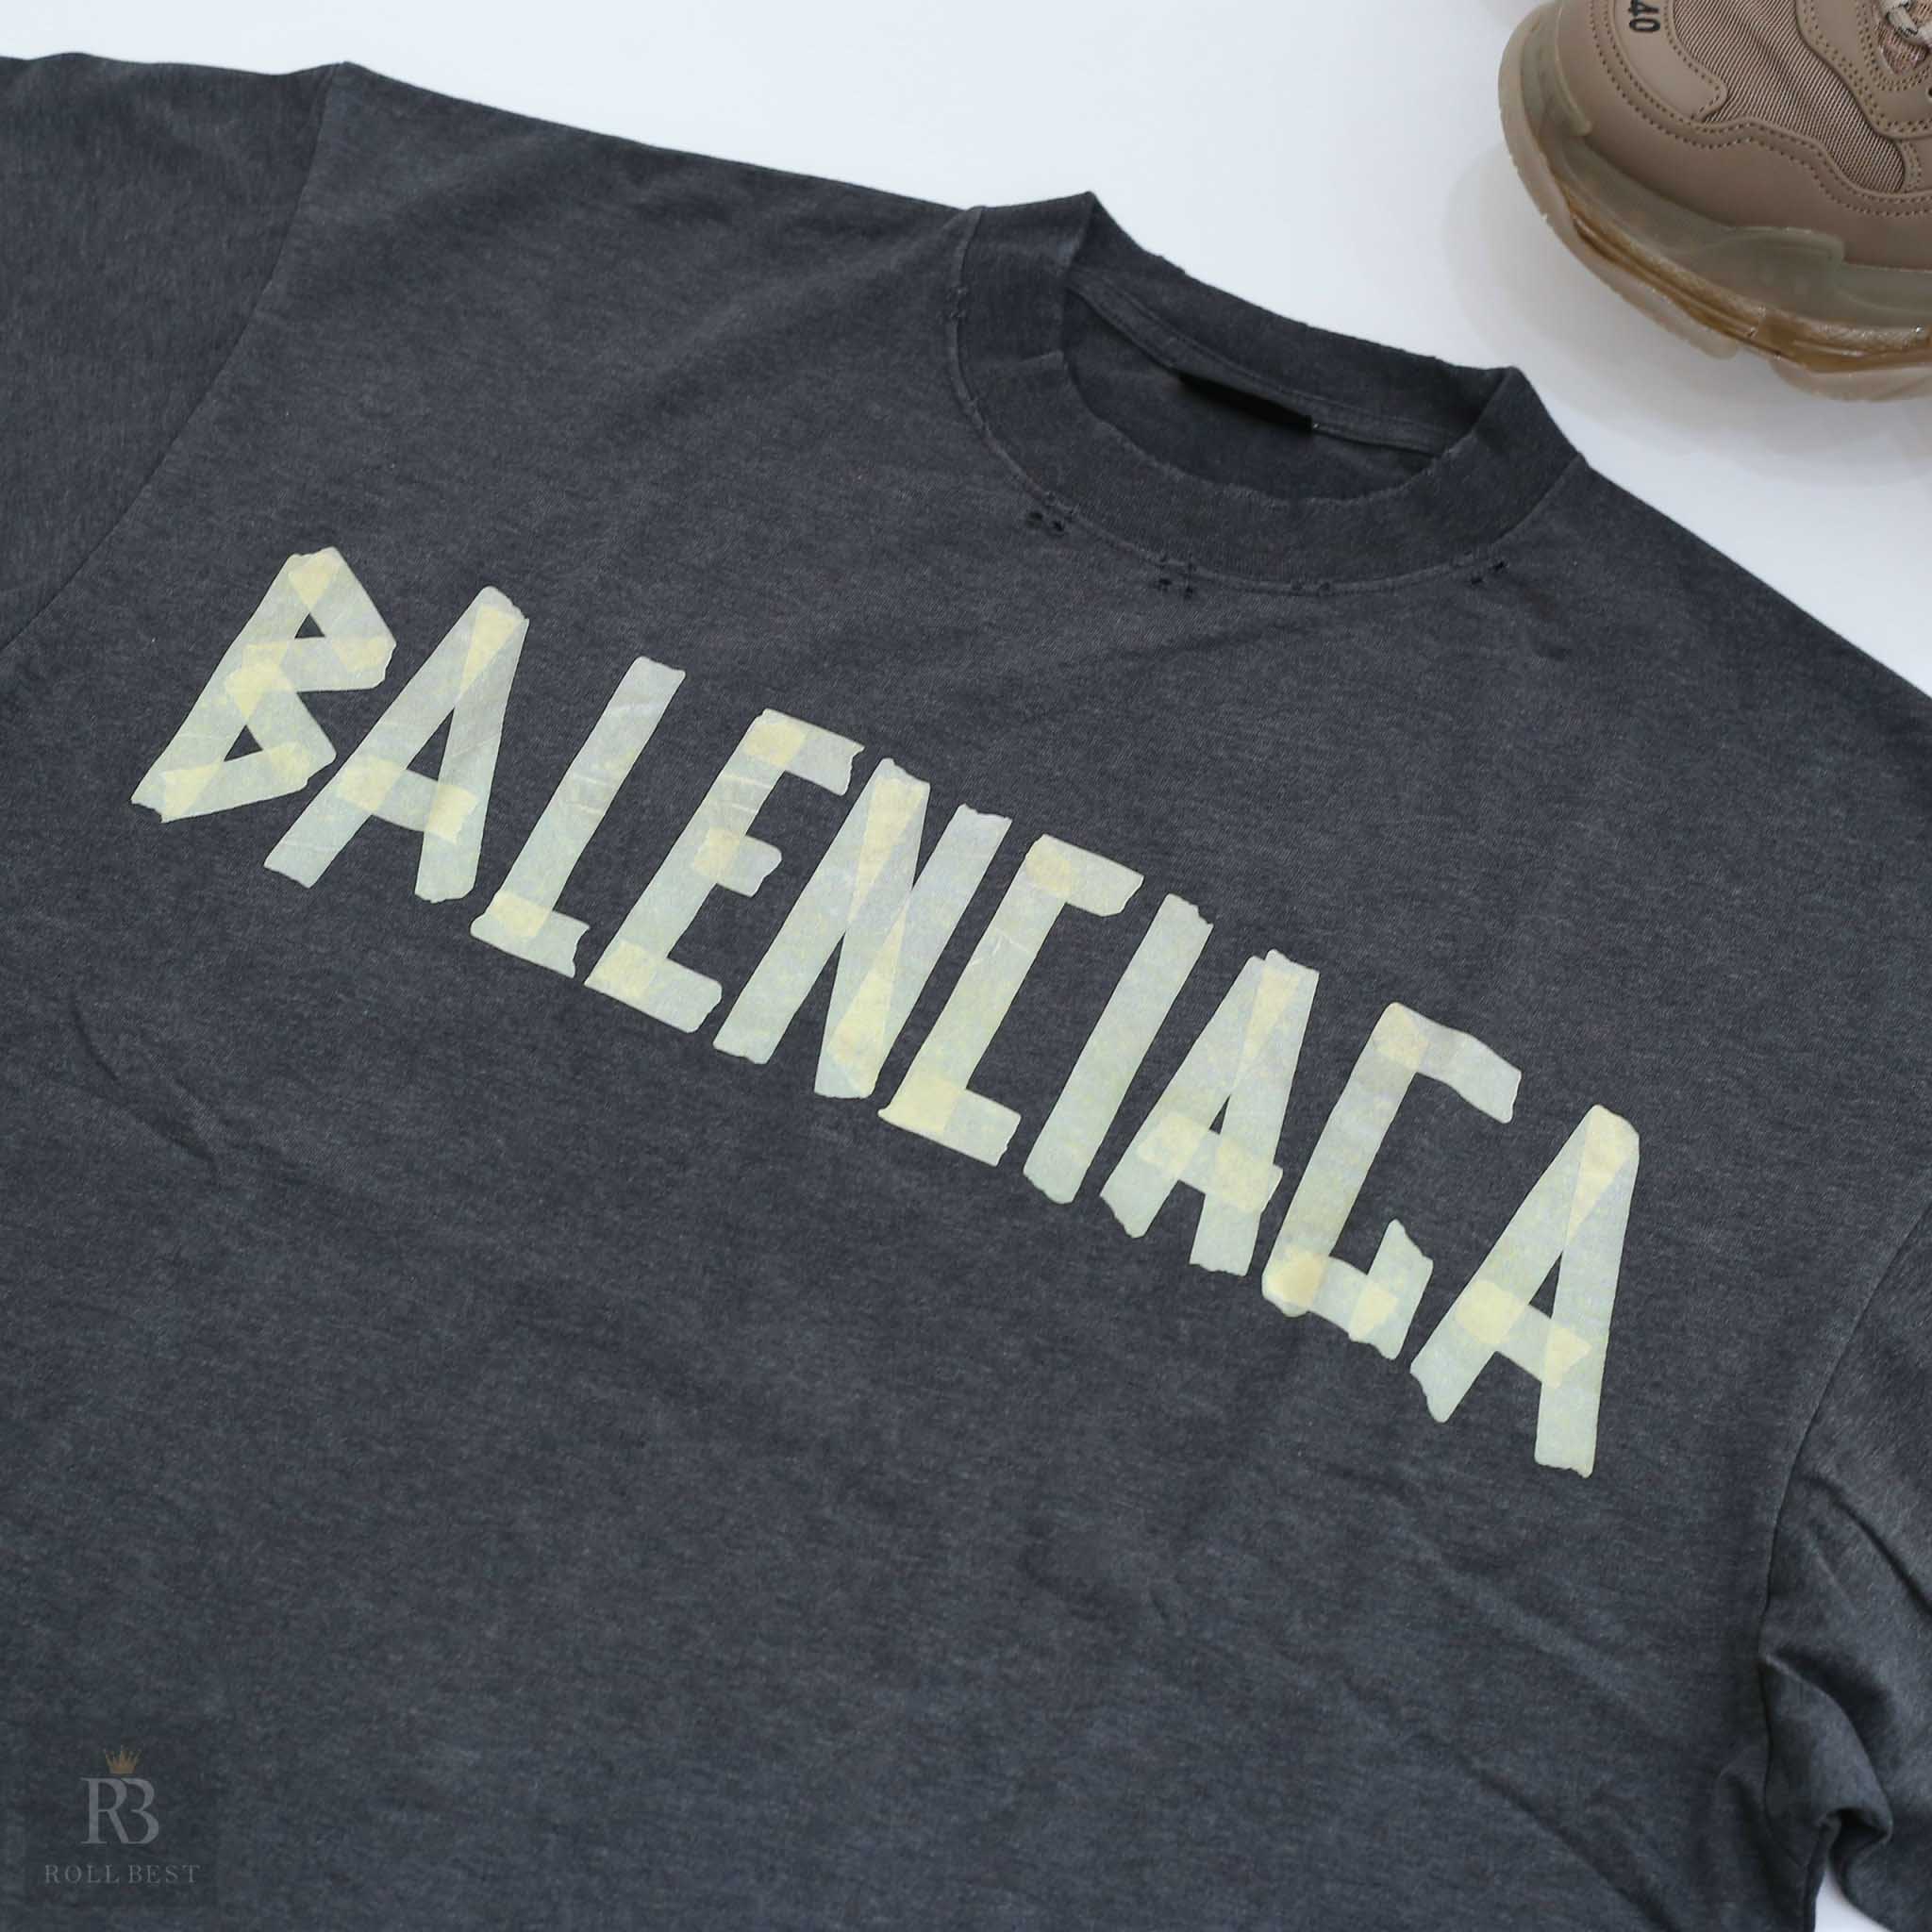 Áo Phông Balenciaga Logo Smalll Tape Type